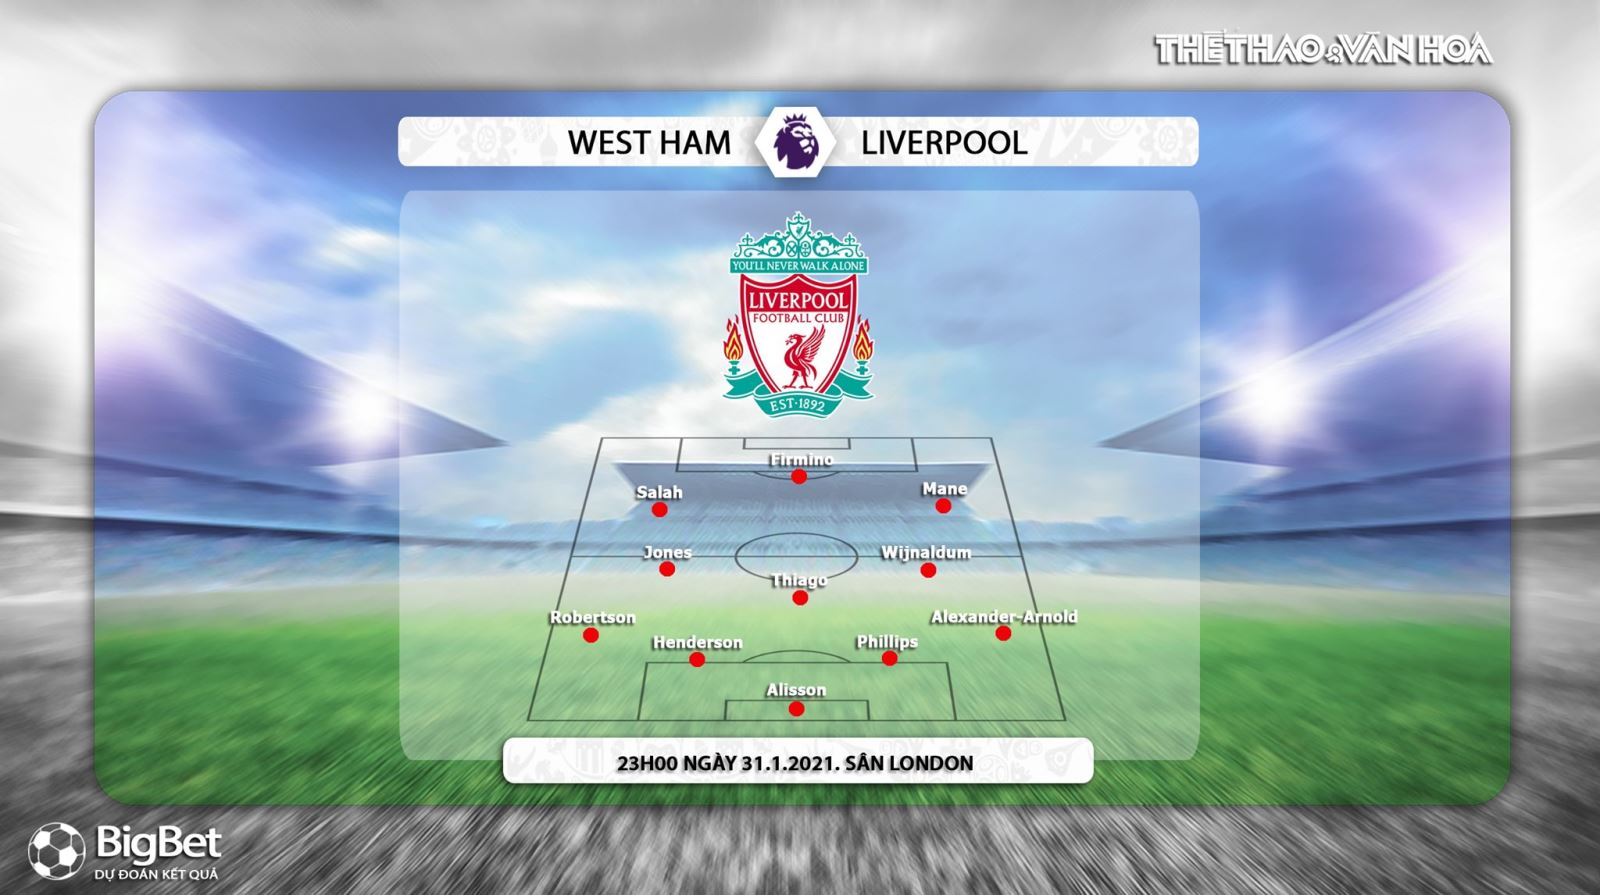 Link xem trực tiếp West Ham vs Liverpool, Trực tiếp Ngoại hạng Anh, K+, K+PM, Trực tiếp bóng đá, Lịch thi đấu bóng đá Anh, West Ham vs Liverpool, BXH Ngoại hạng Anh